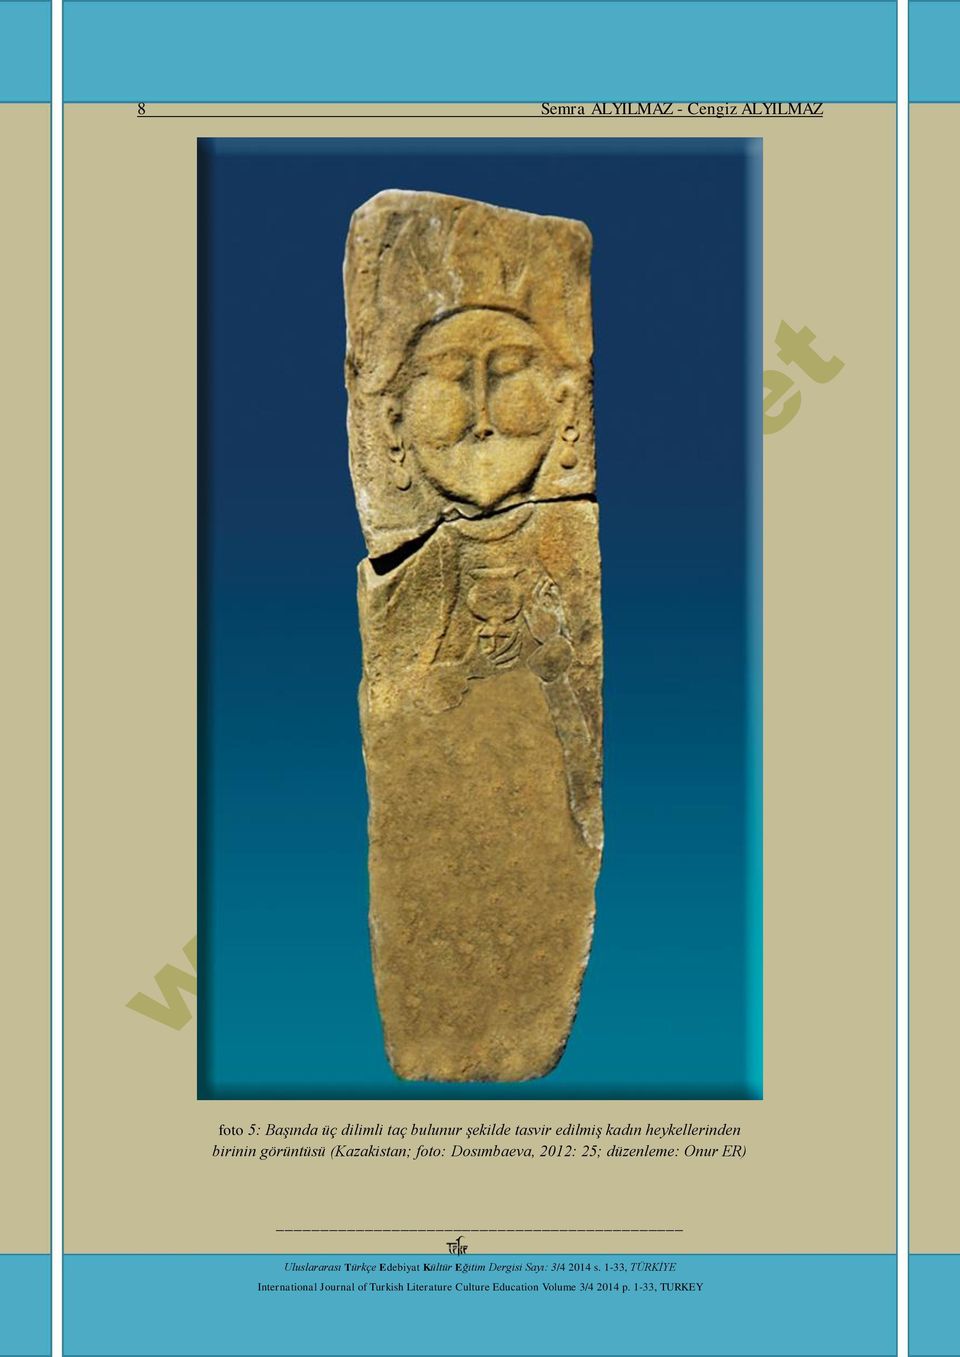 edilmiş kadın heykellerinden birinin görüntüsü